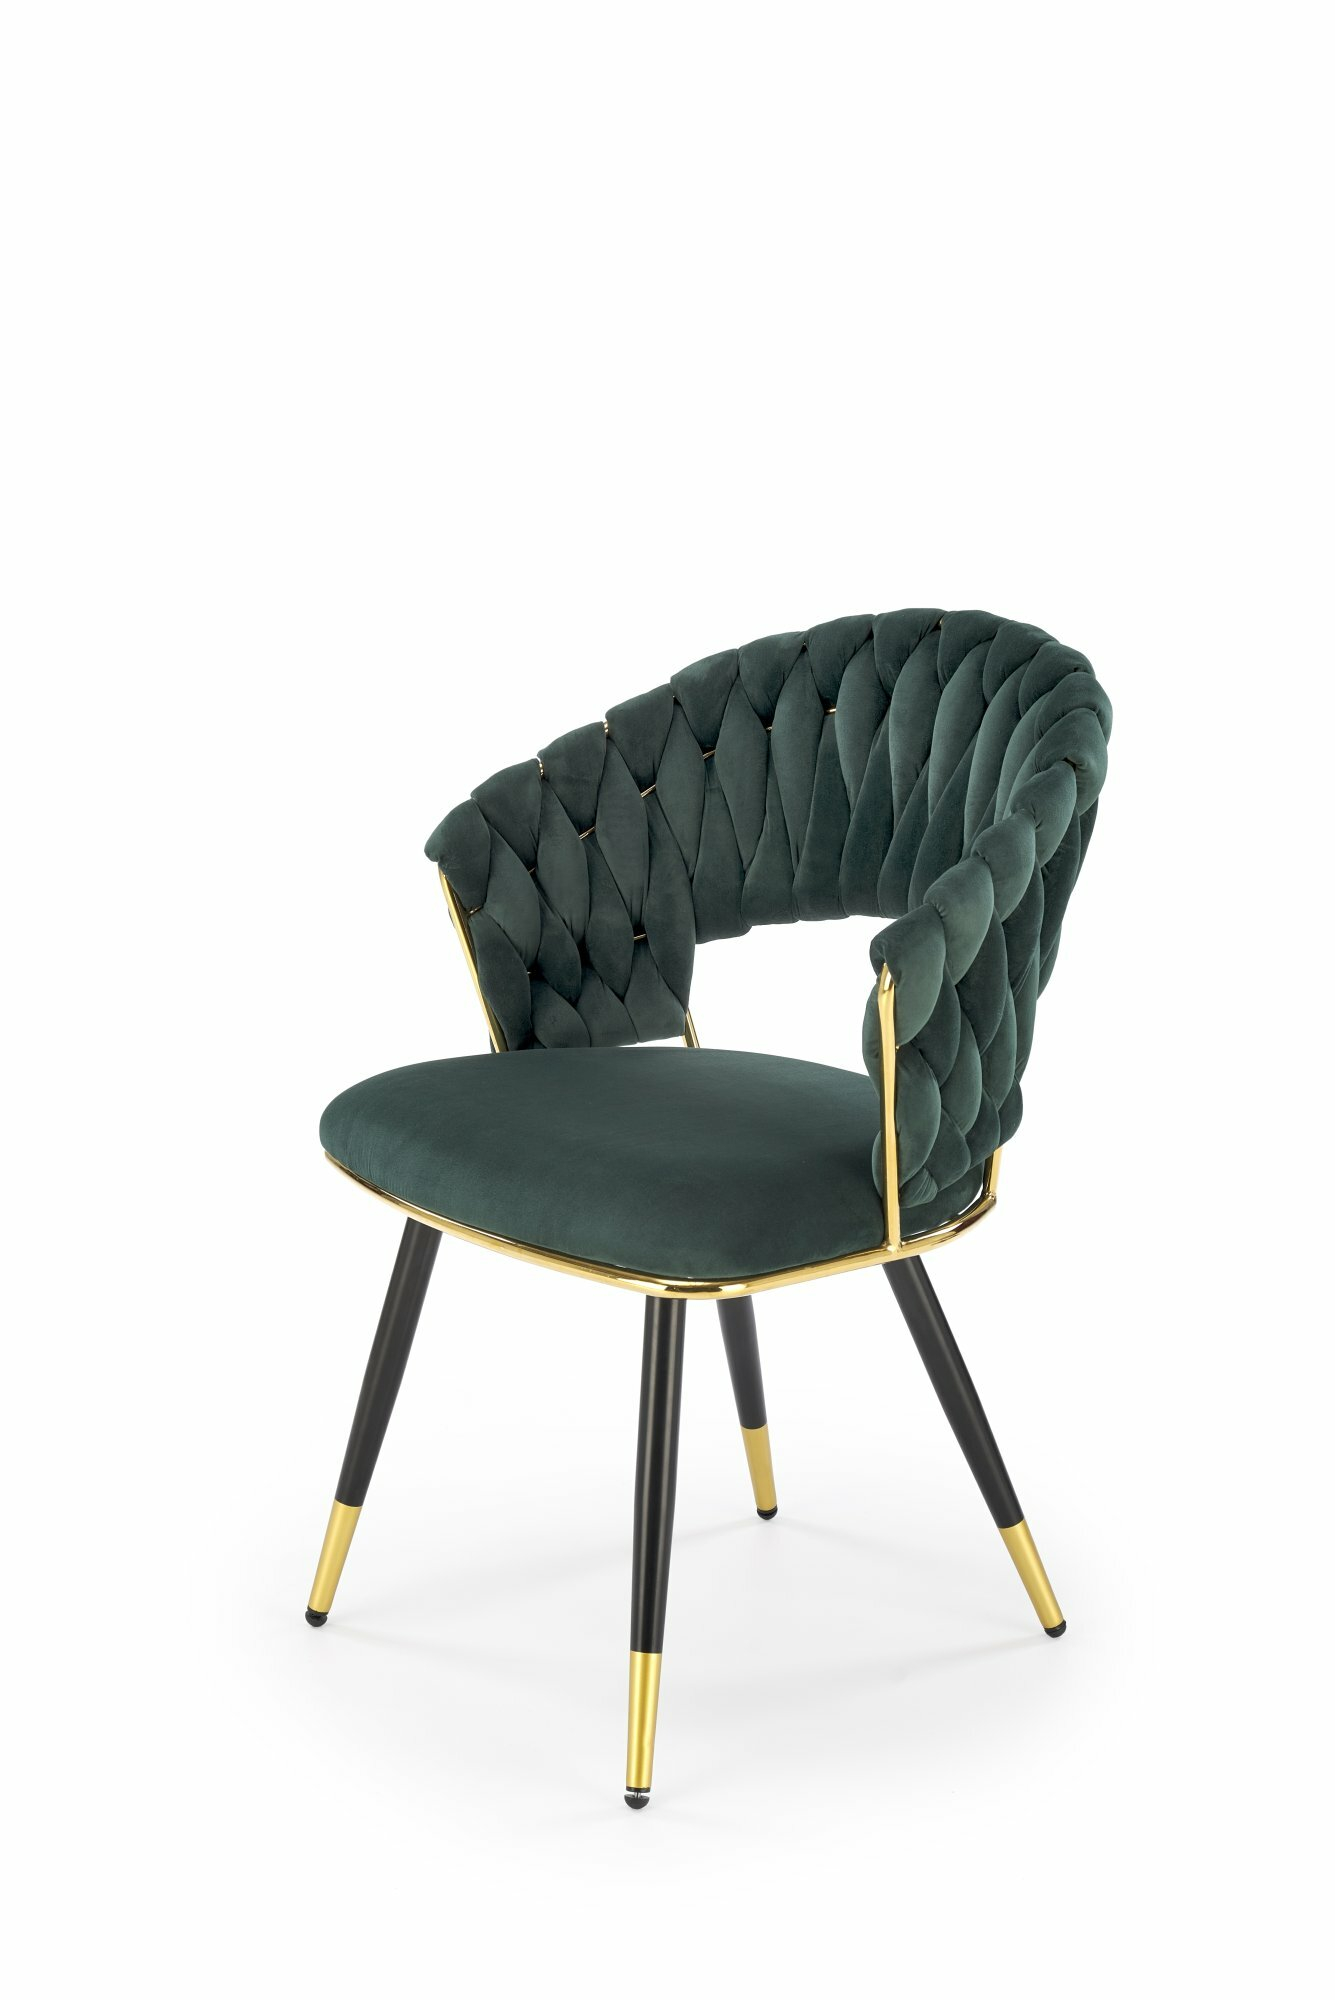 K551 krzesło ciemny zielony